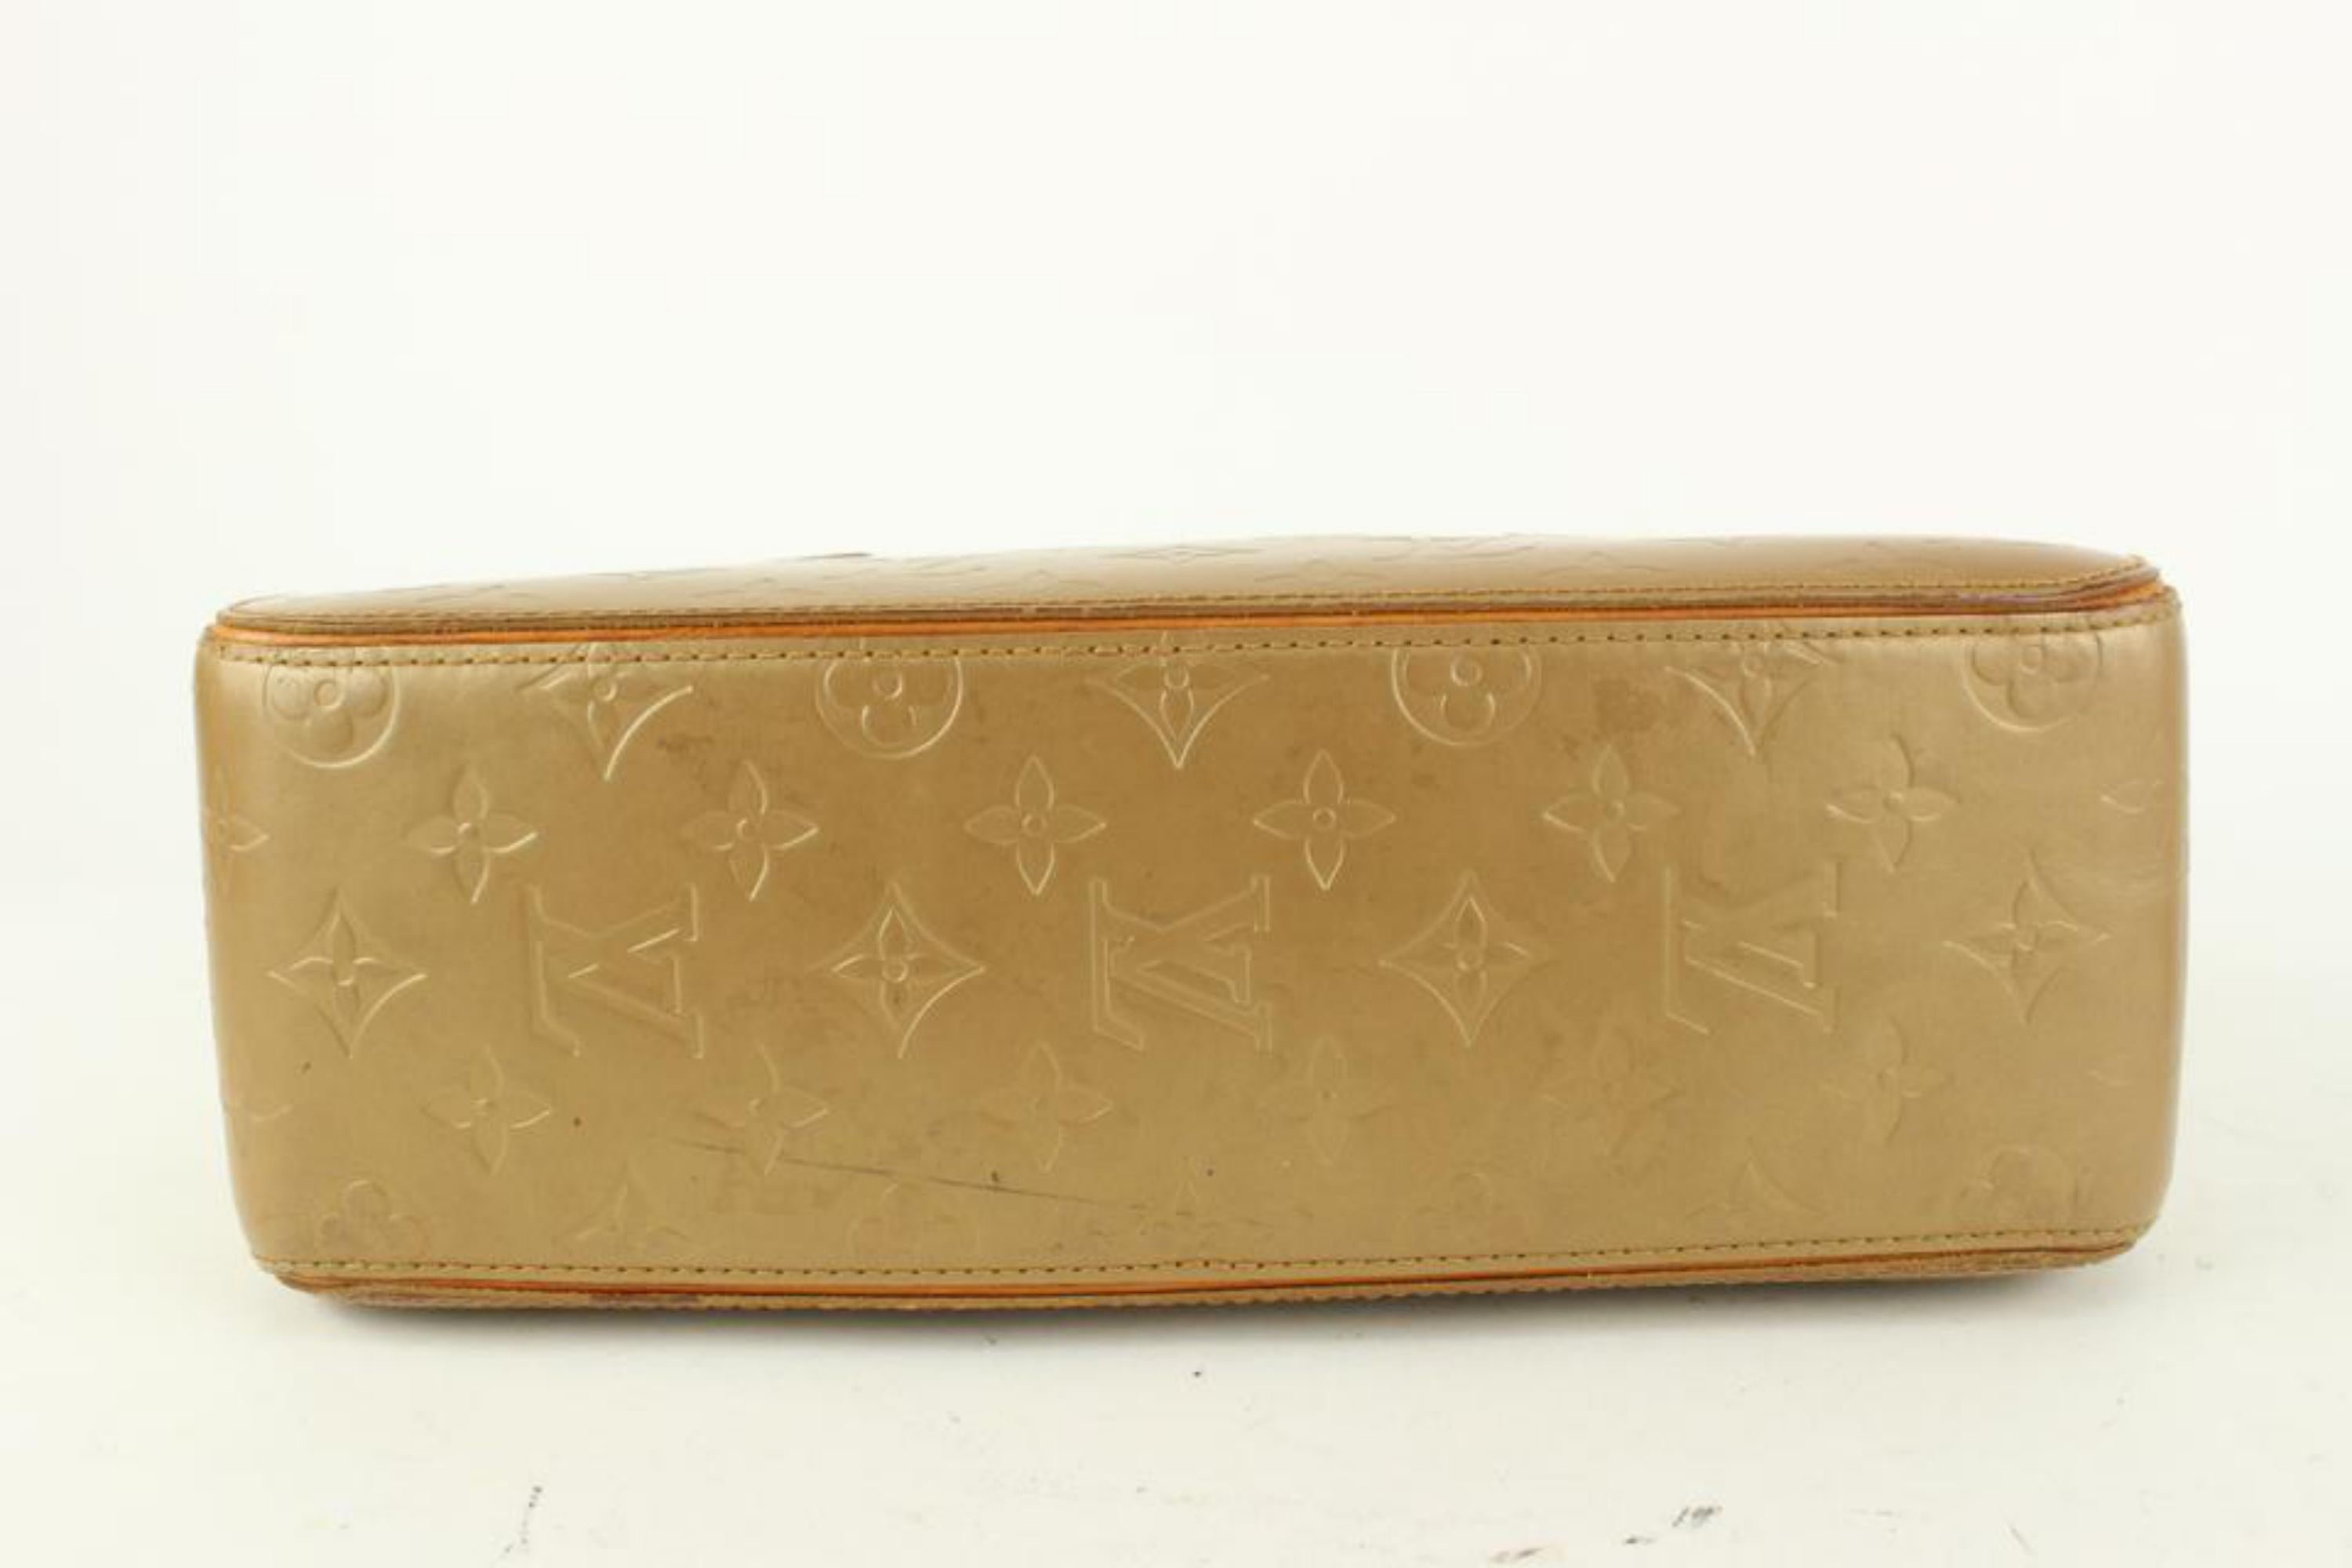 Louis Vuitton Gold Monogram Vernis Mat Shelton Trunk Satchel Bag 927lv42 2